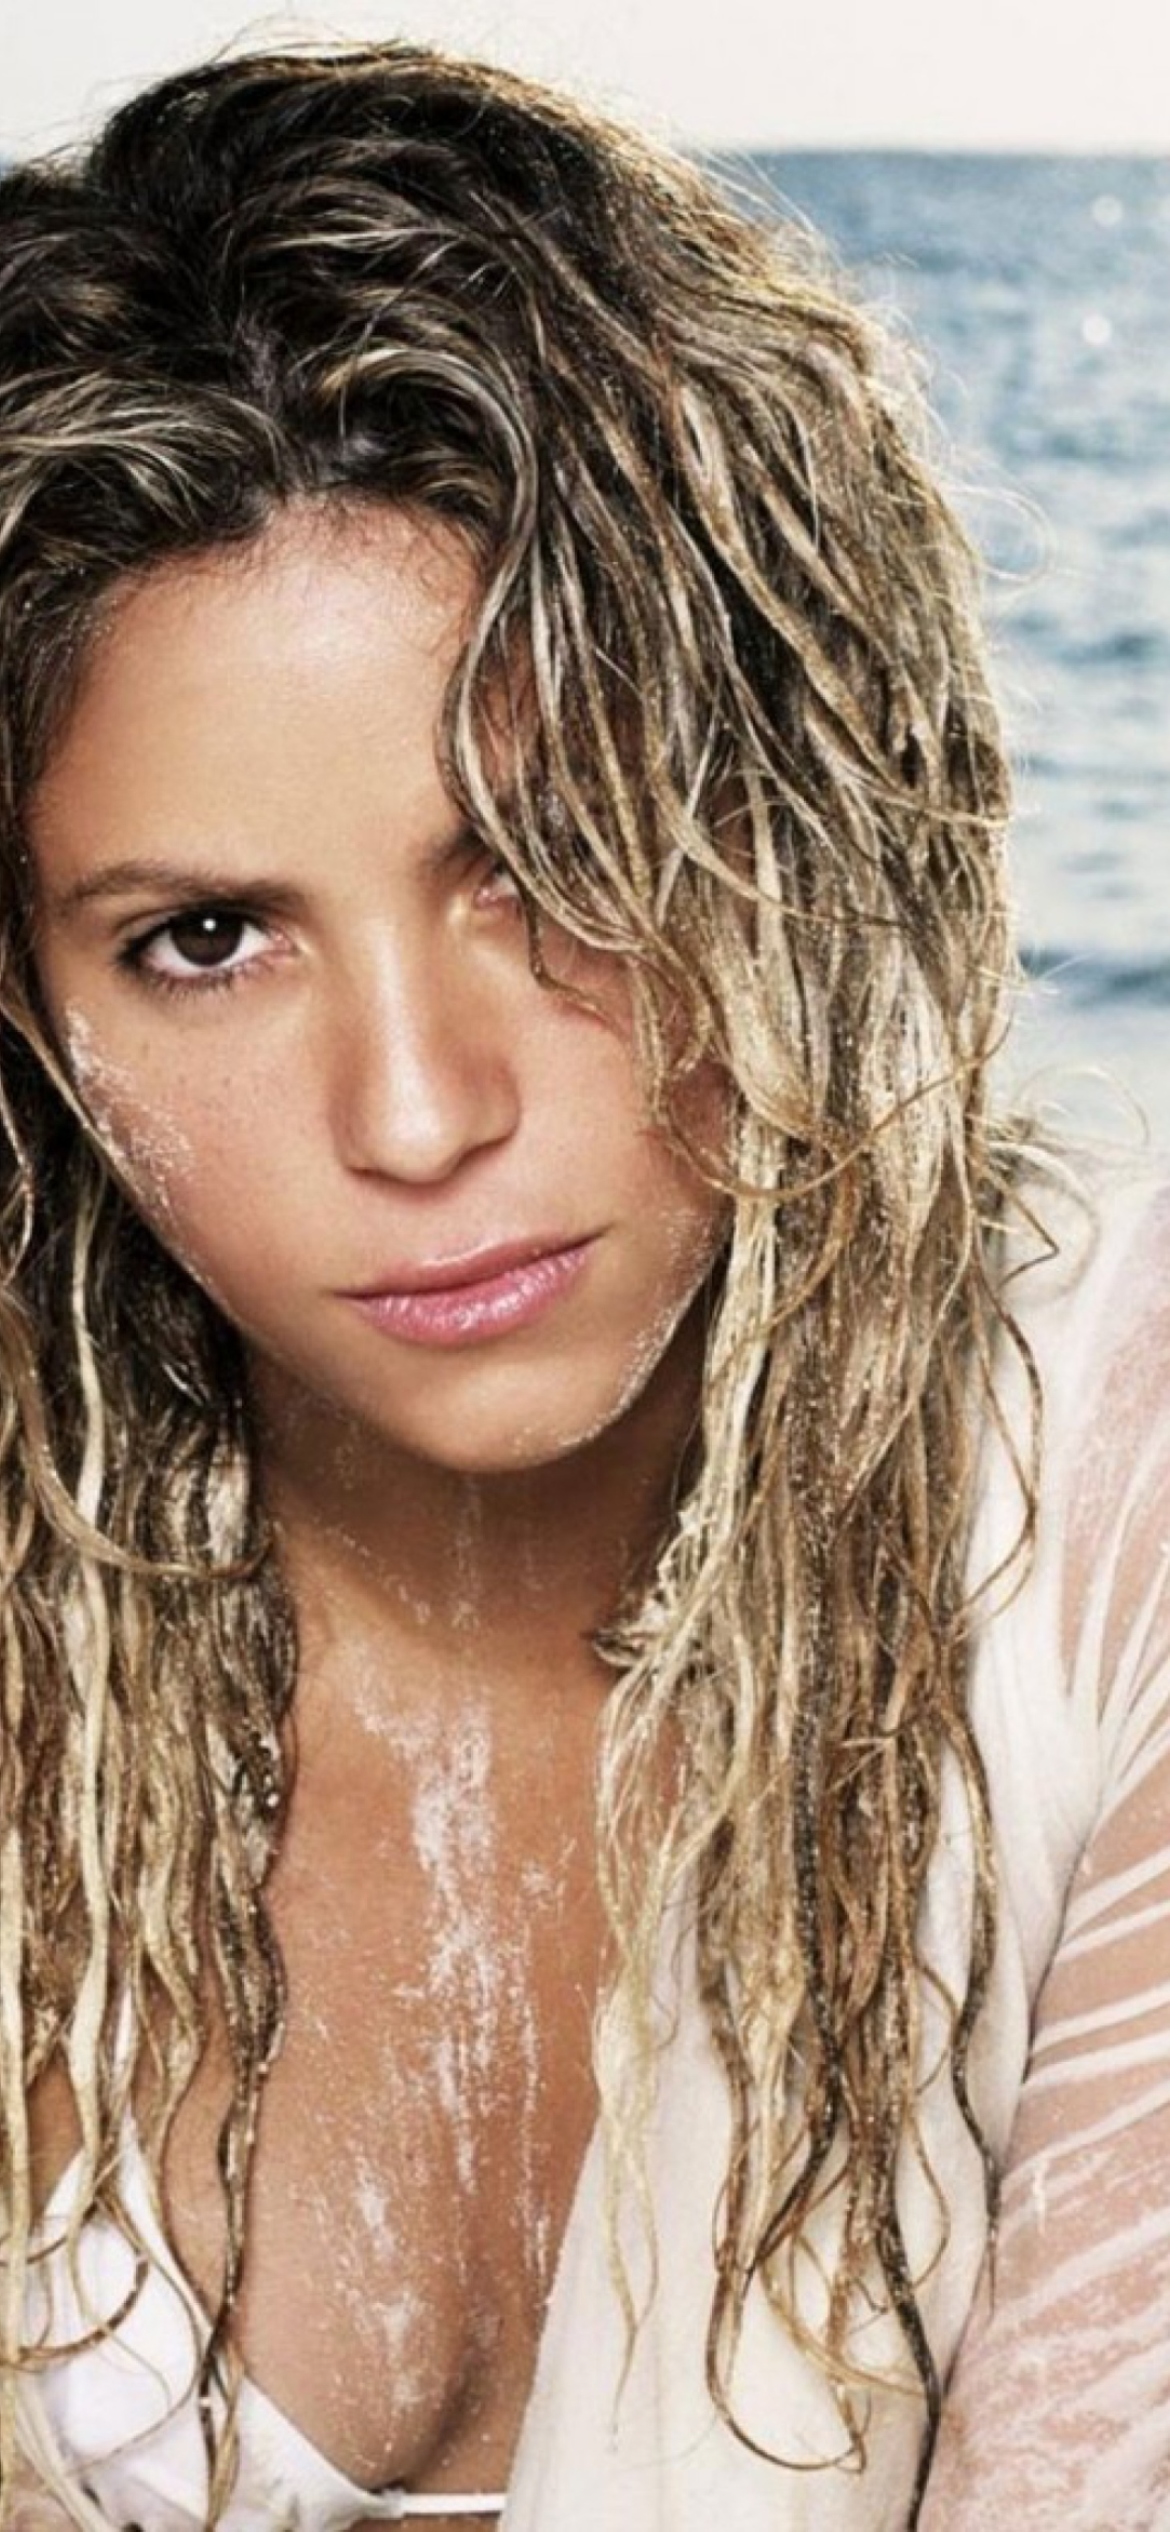 Shakira On Beach screenshot #1 1170x2532